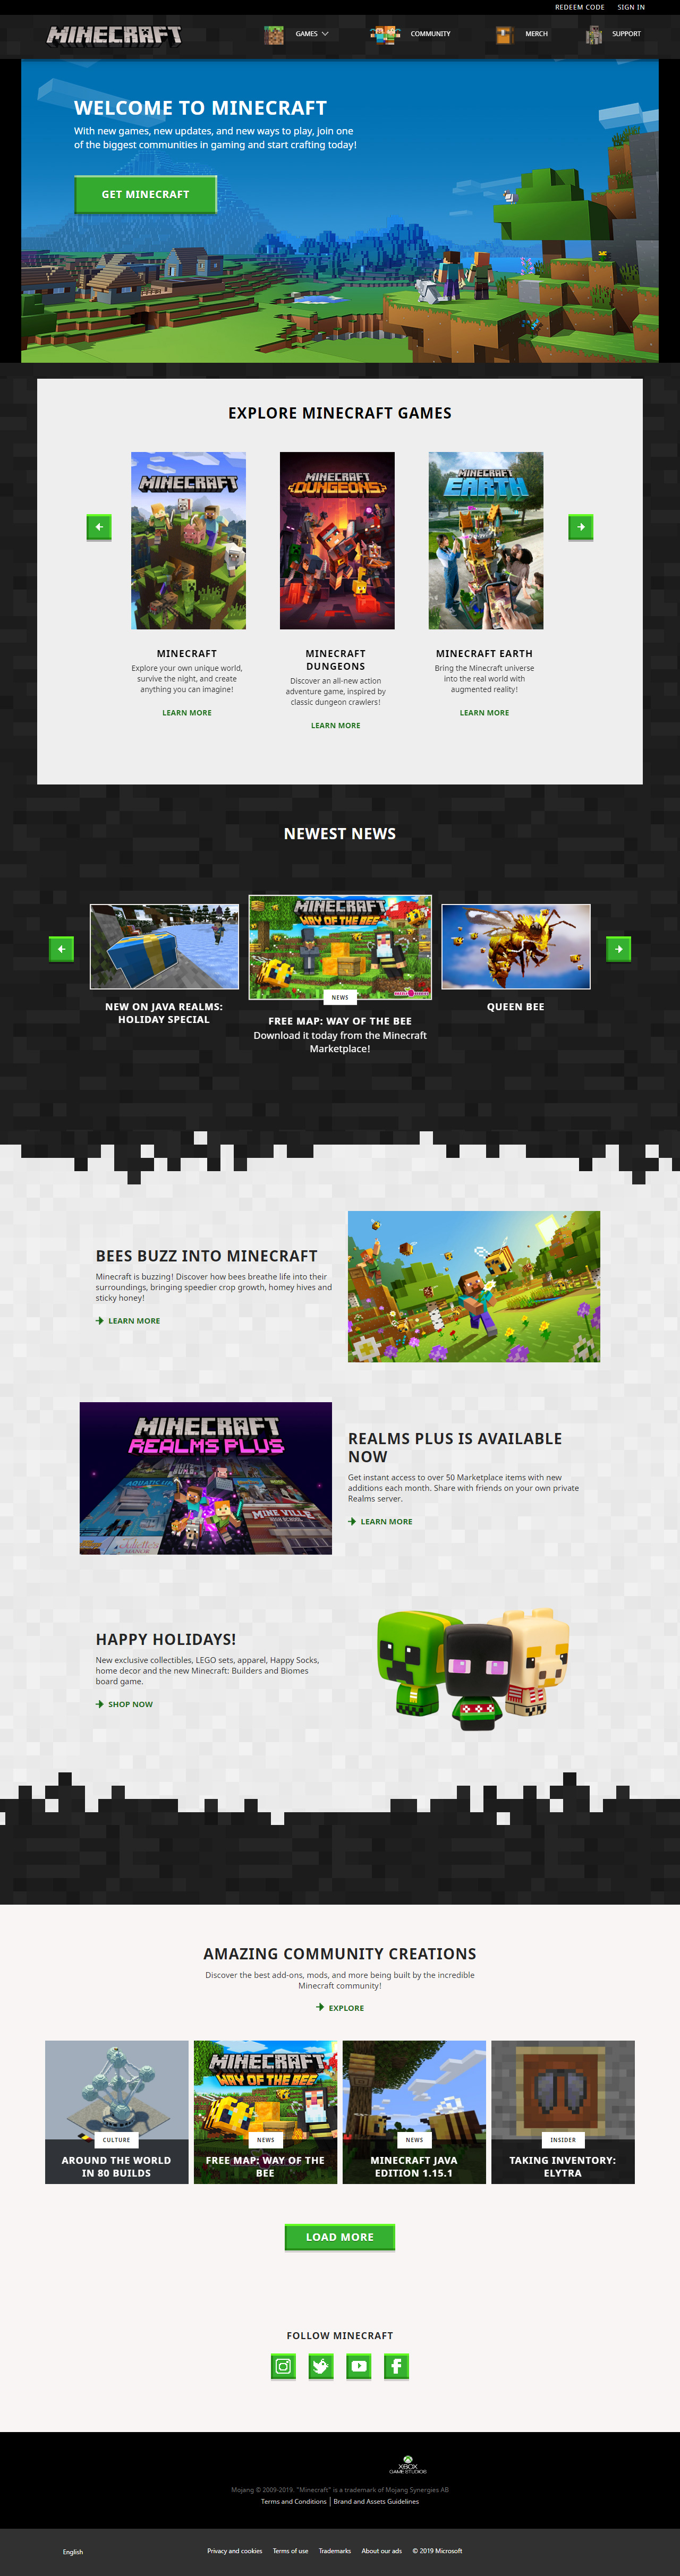 Minecraft website in 2019